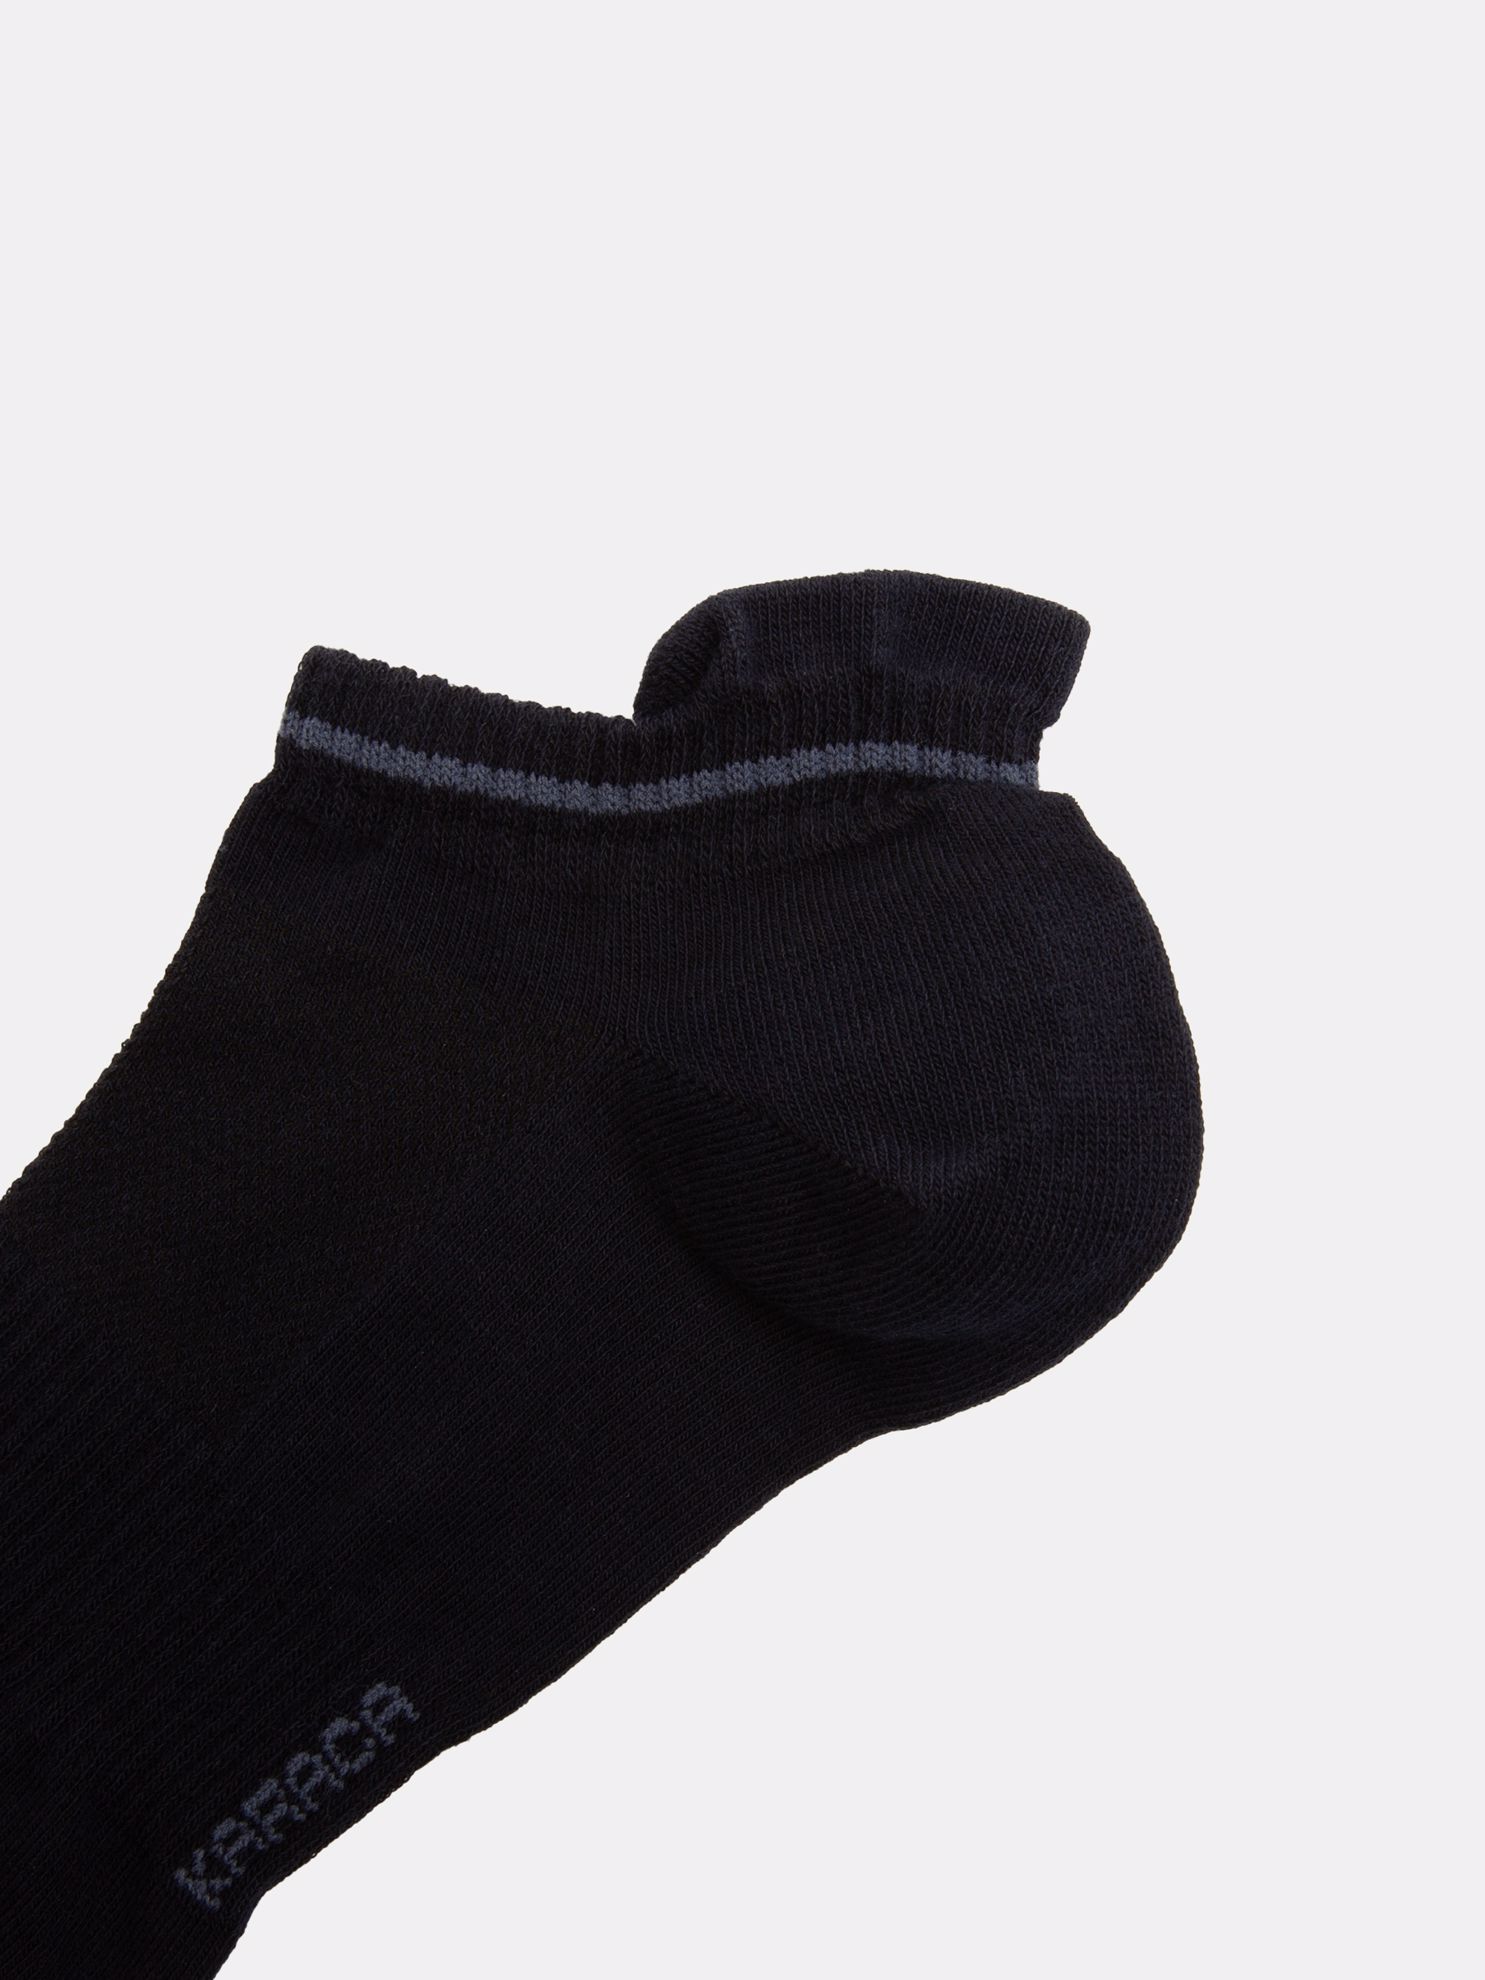 Karaca Erkek Soket Çorap-Lacivert/Lacivert. ürün görseli